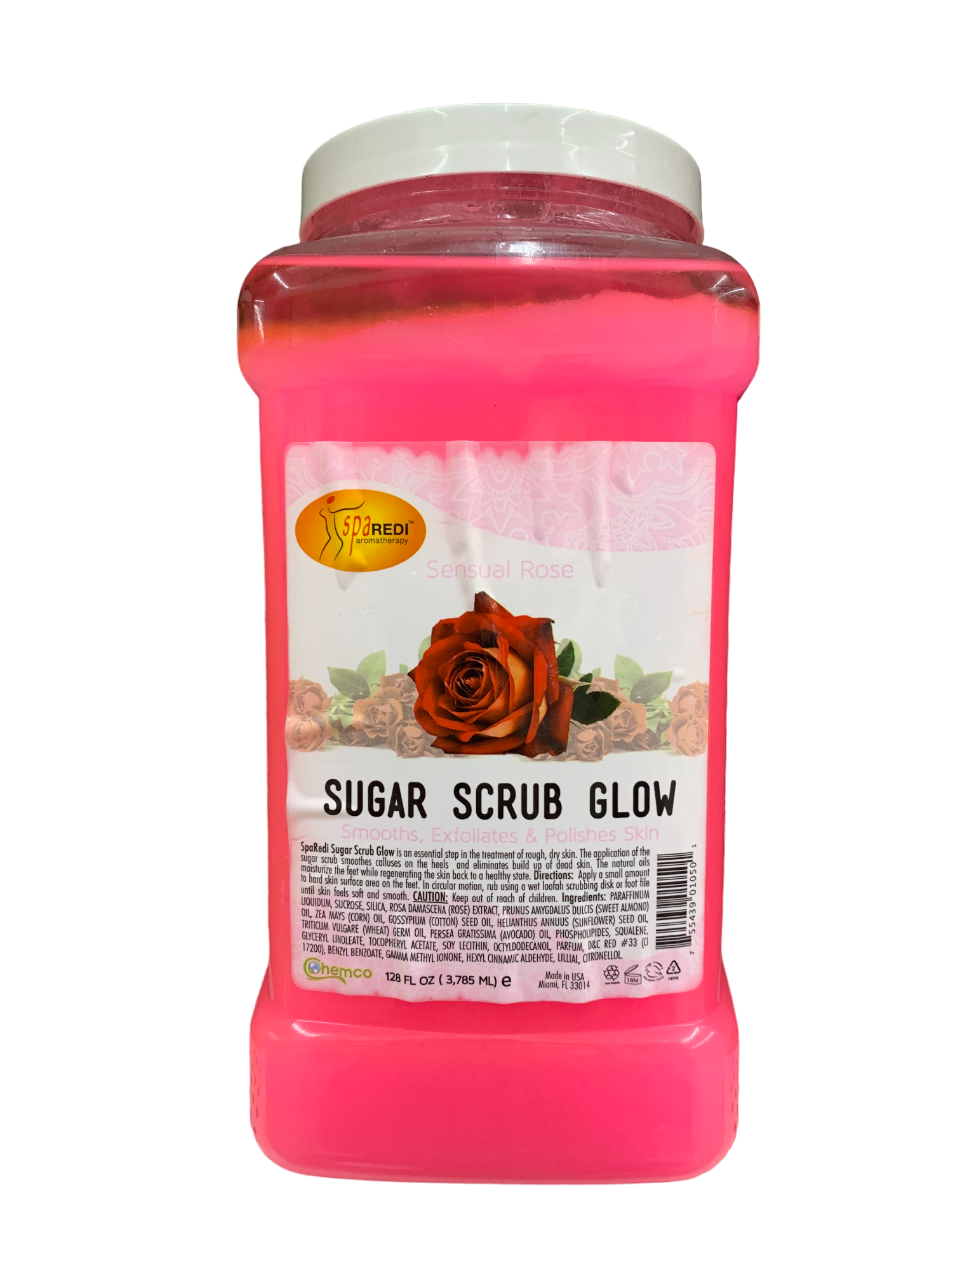 SpaRedi Sugar Scrub Glow Sensual Rose